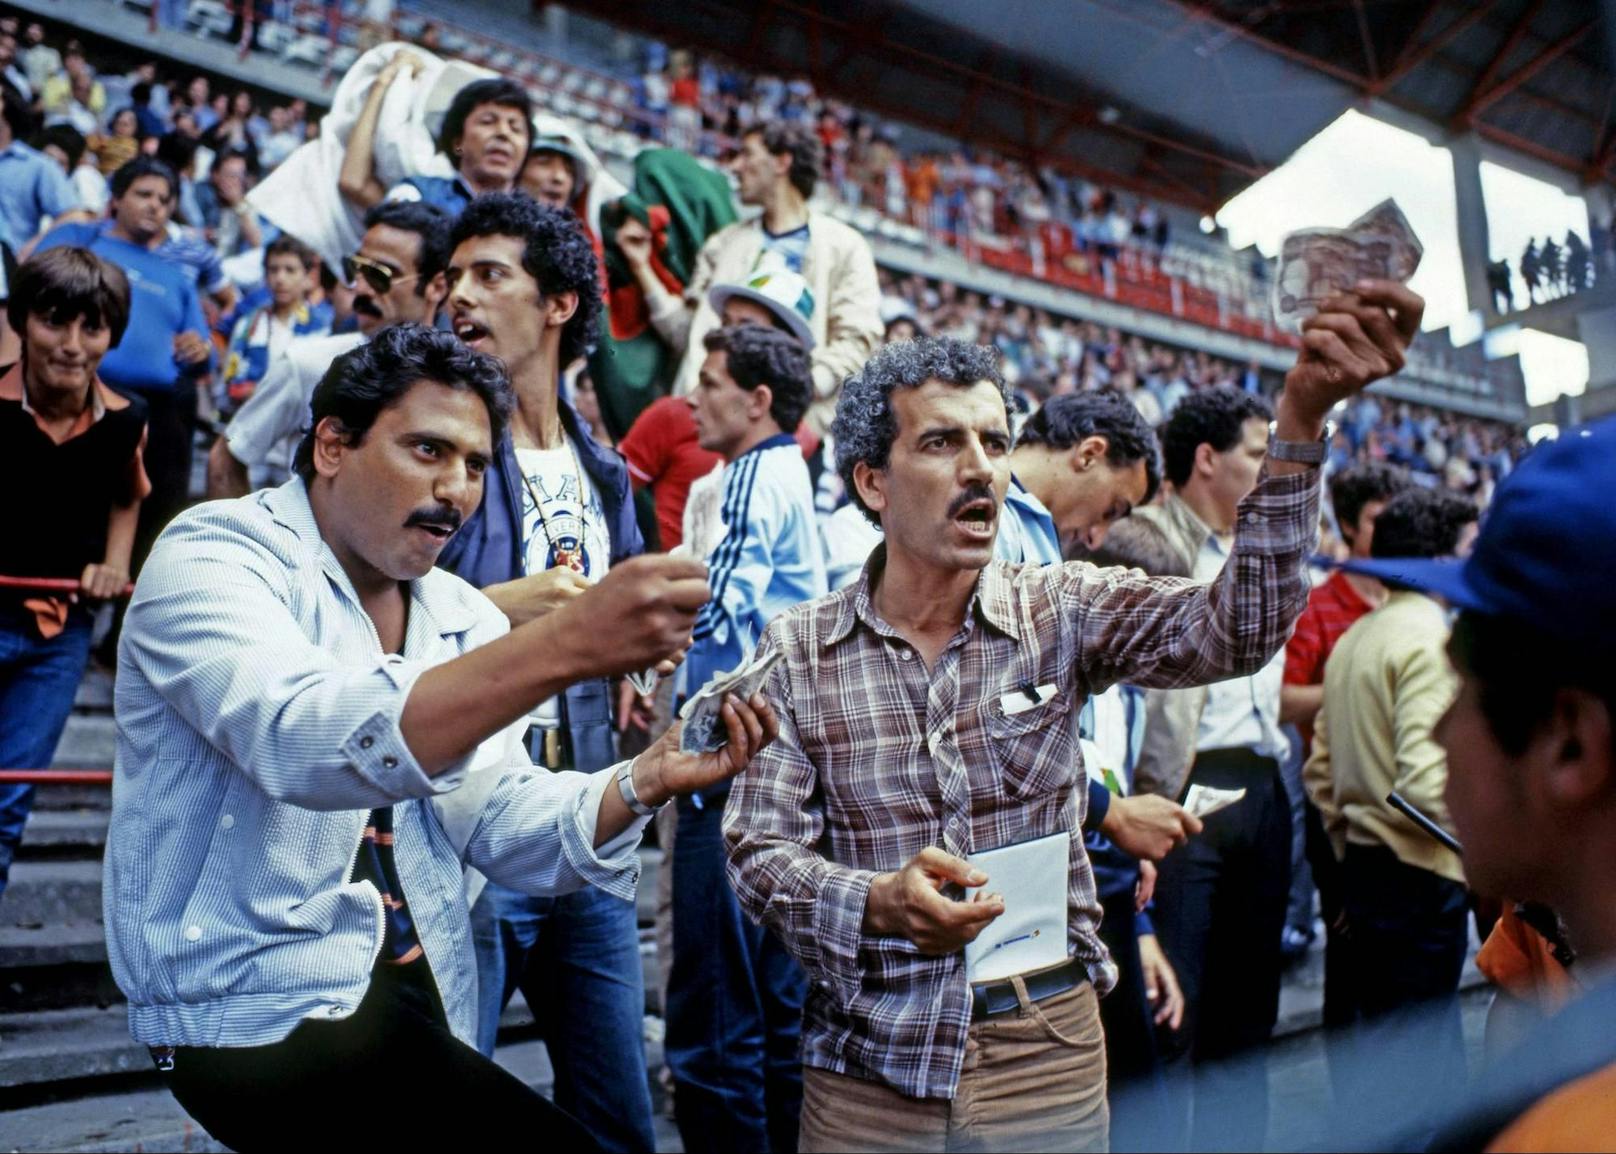 Algerische Fans wedelten im Stadion mit Geldscheinen. Für sie war klar, dass das Ergebnis abgesprochen sein musste.